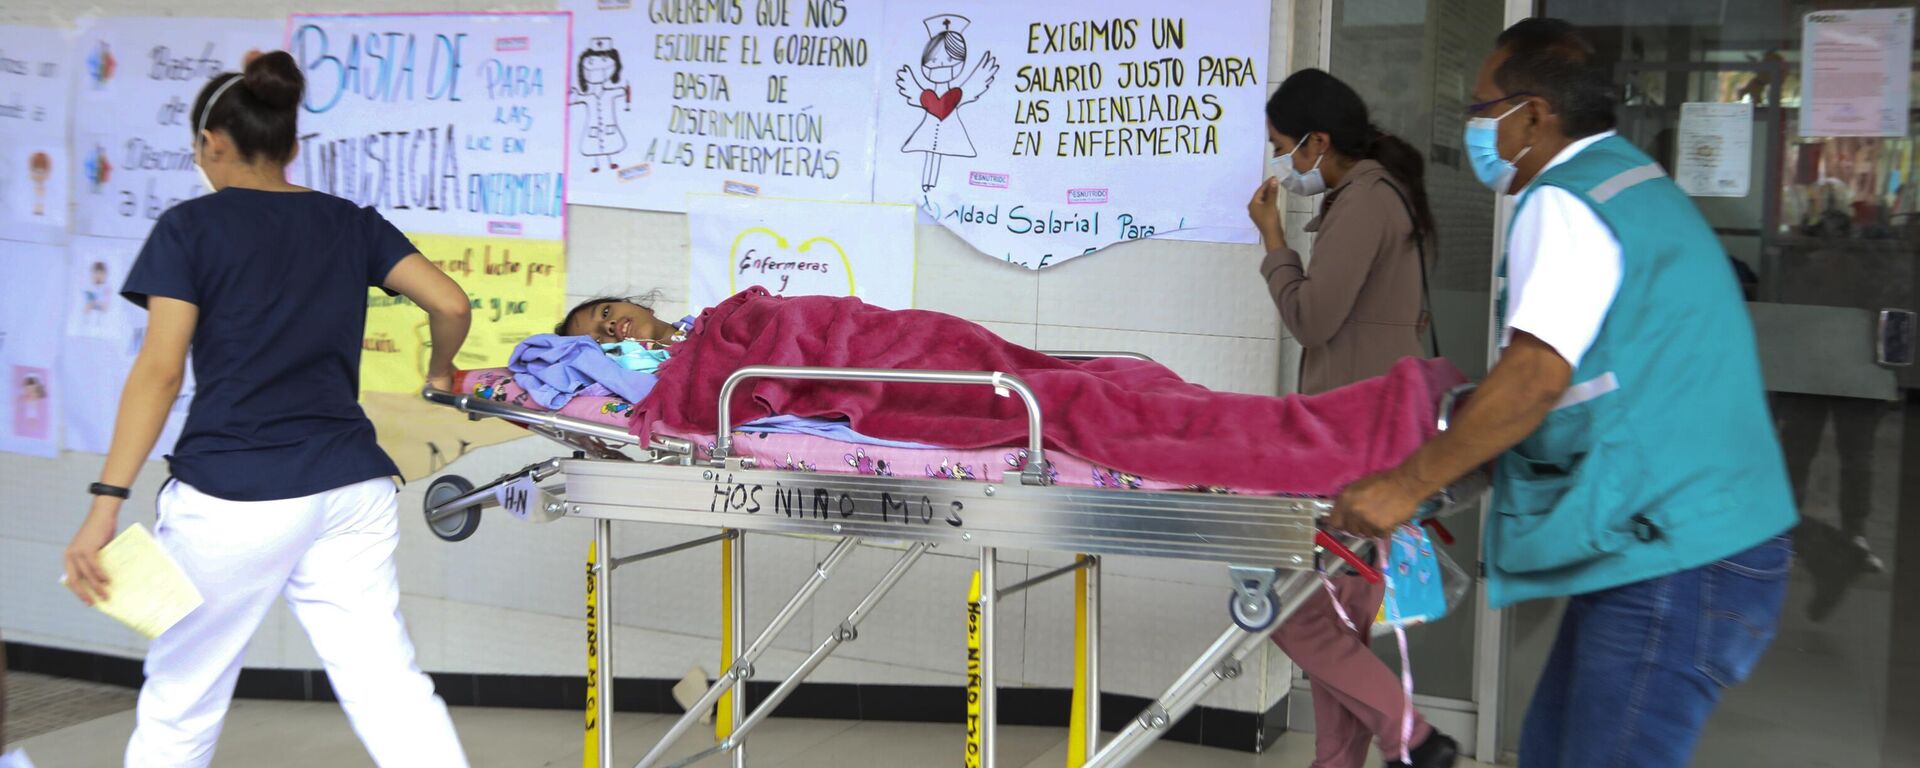 Un paciente con dengue es trasladado en camilla en el Hospital Infantil Mario Ortiz de Santa Cruz, Bolivia - Sputnik Mundo, 1920, 27.02.2023